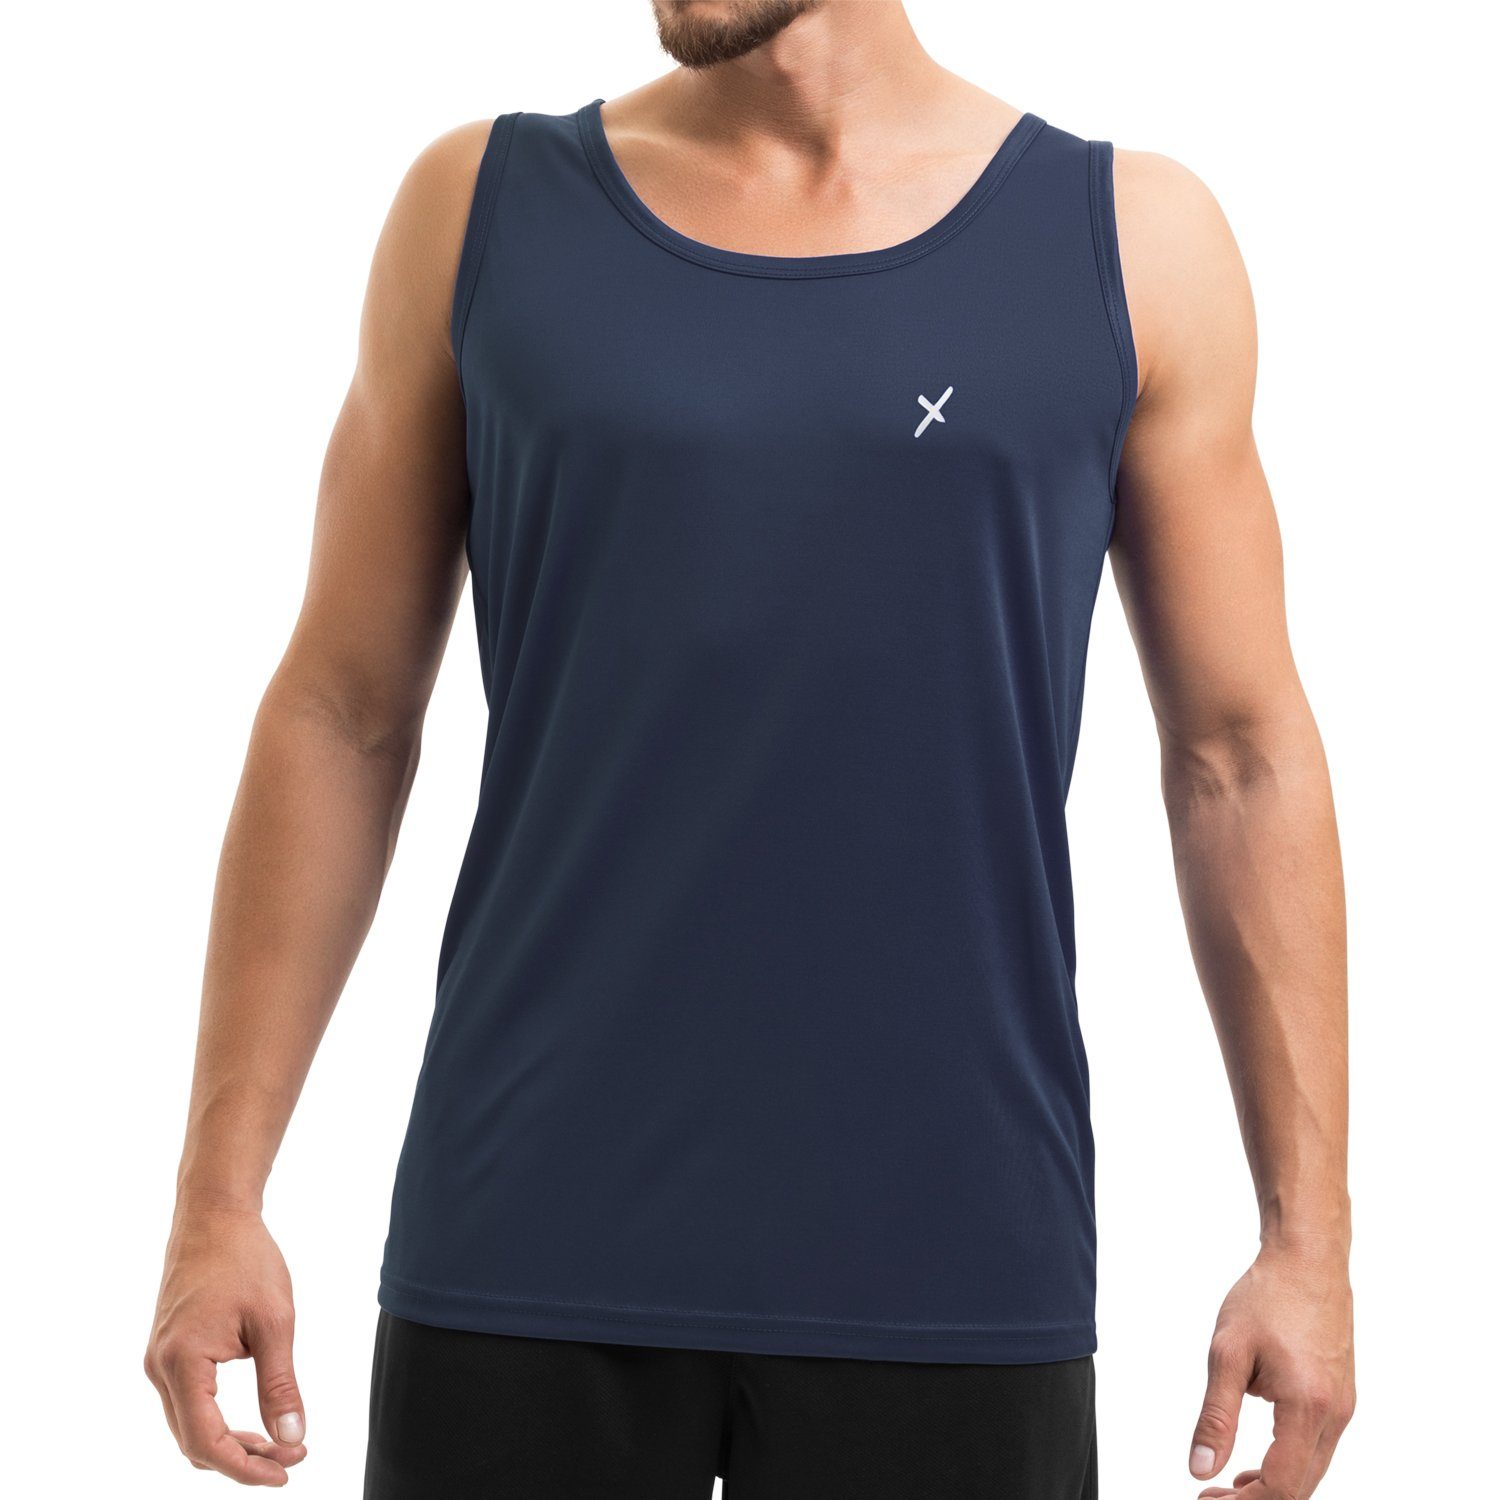 CFLEX Trainingsshirt Herren Sport Shirt Fitness Tanktop Sportswear Collection Navy